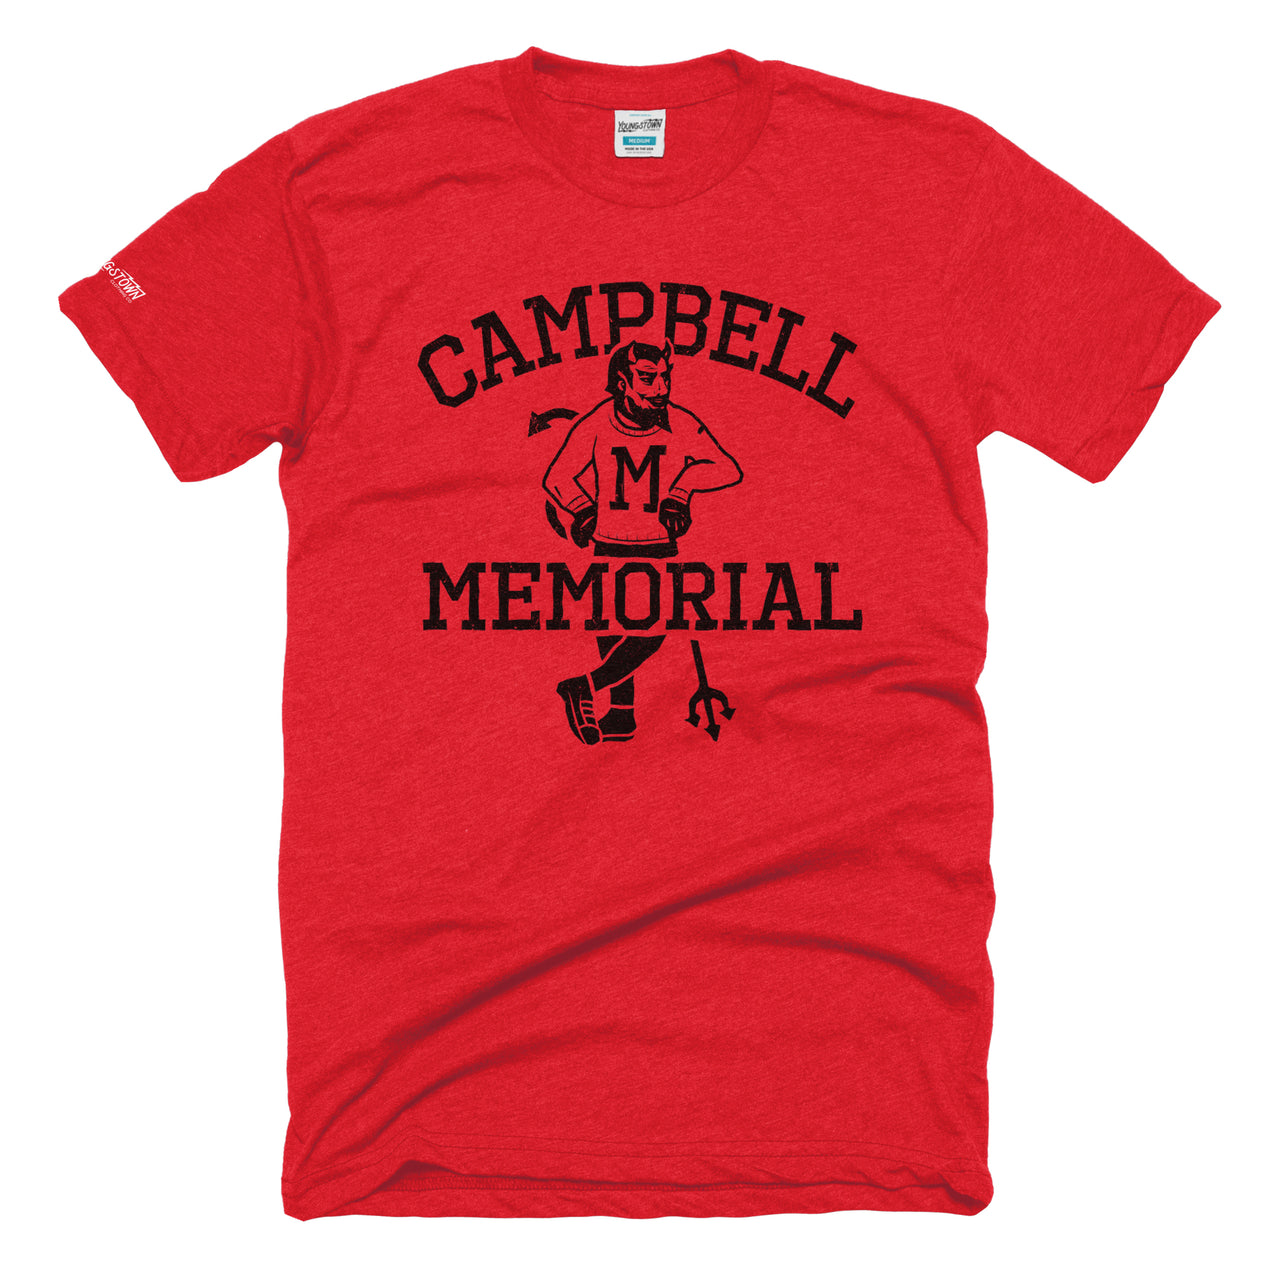 Campbell Memorial